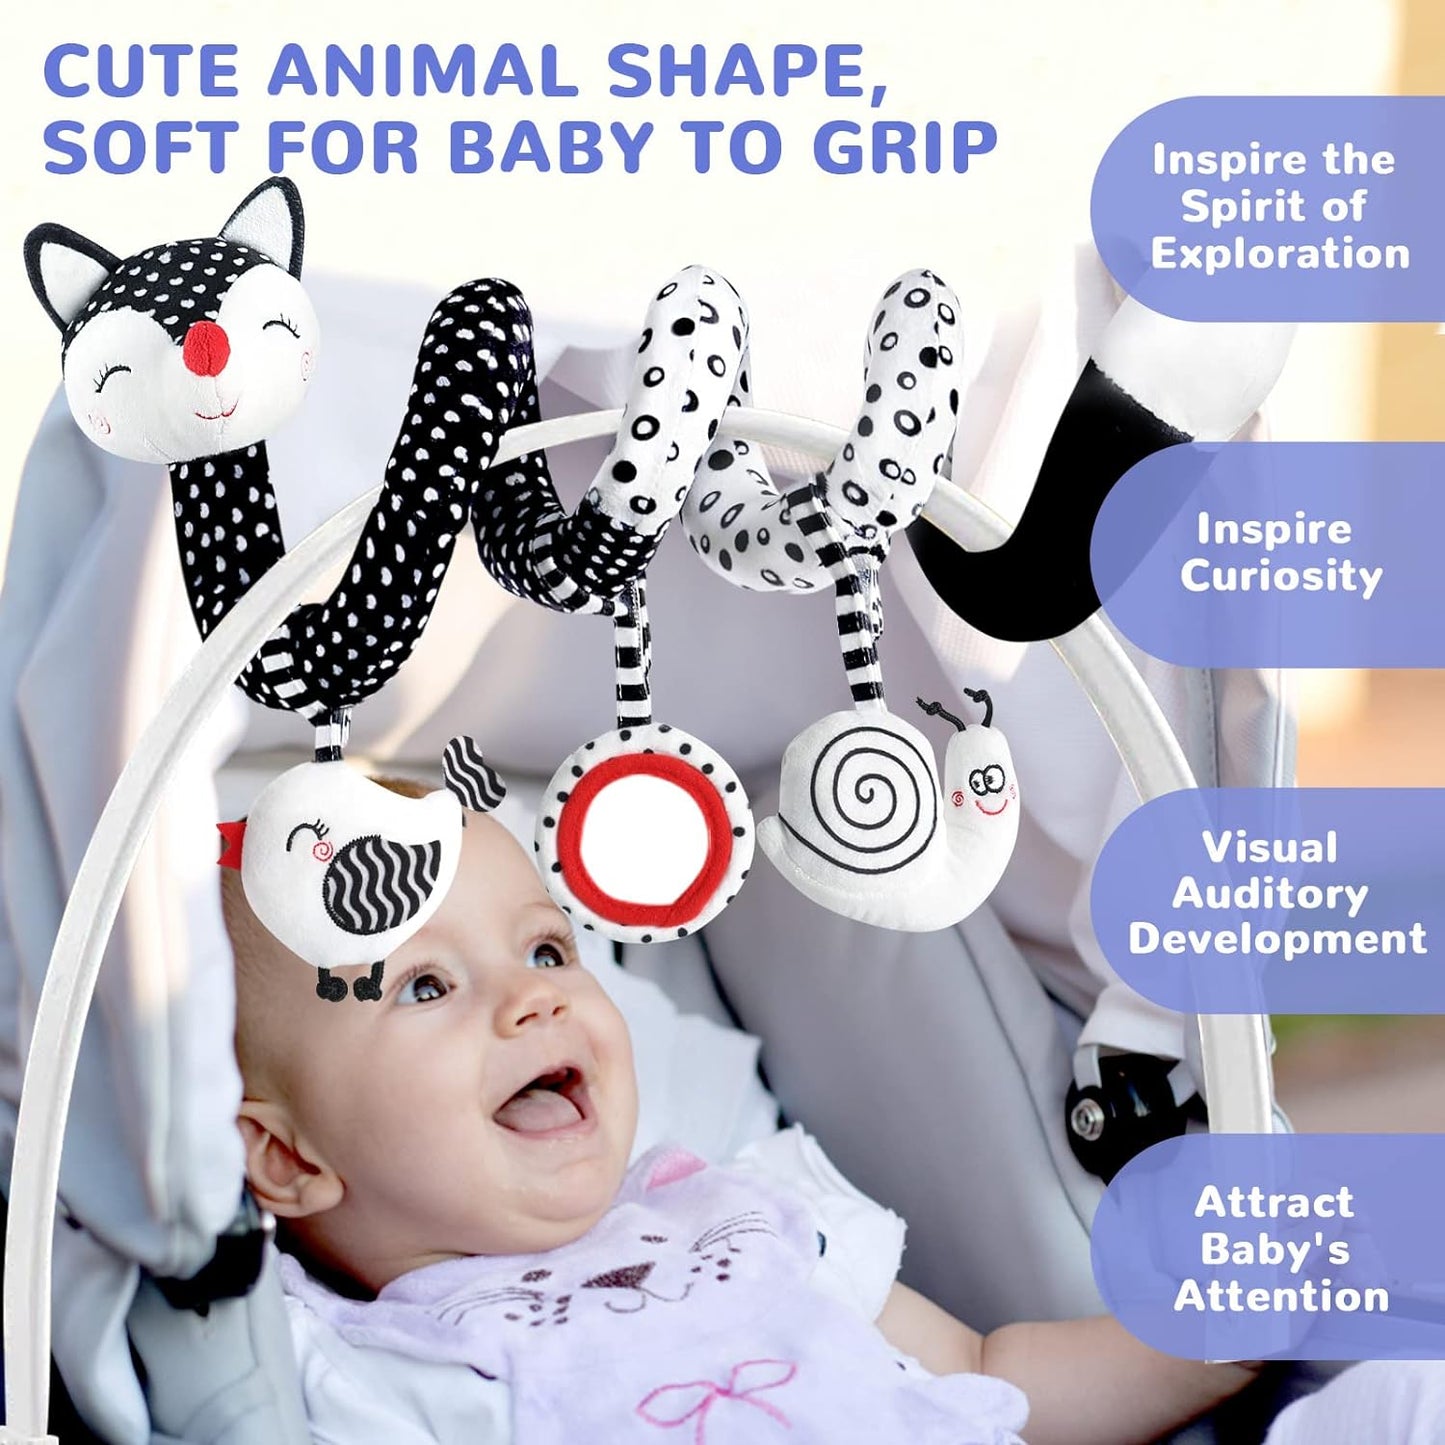 Hommyx Spiral Caterpillar Fox Toy for Baby Gear